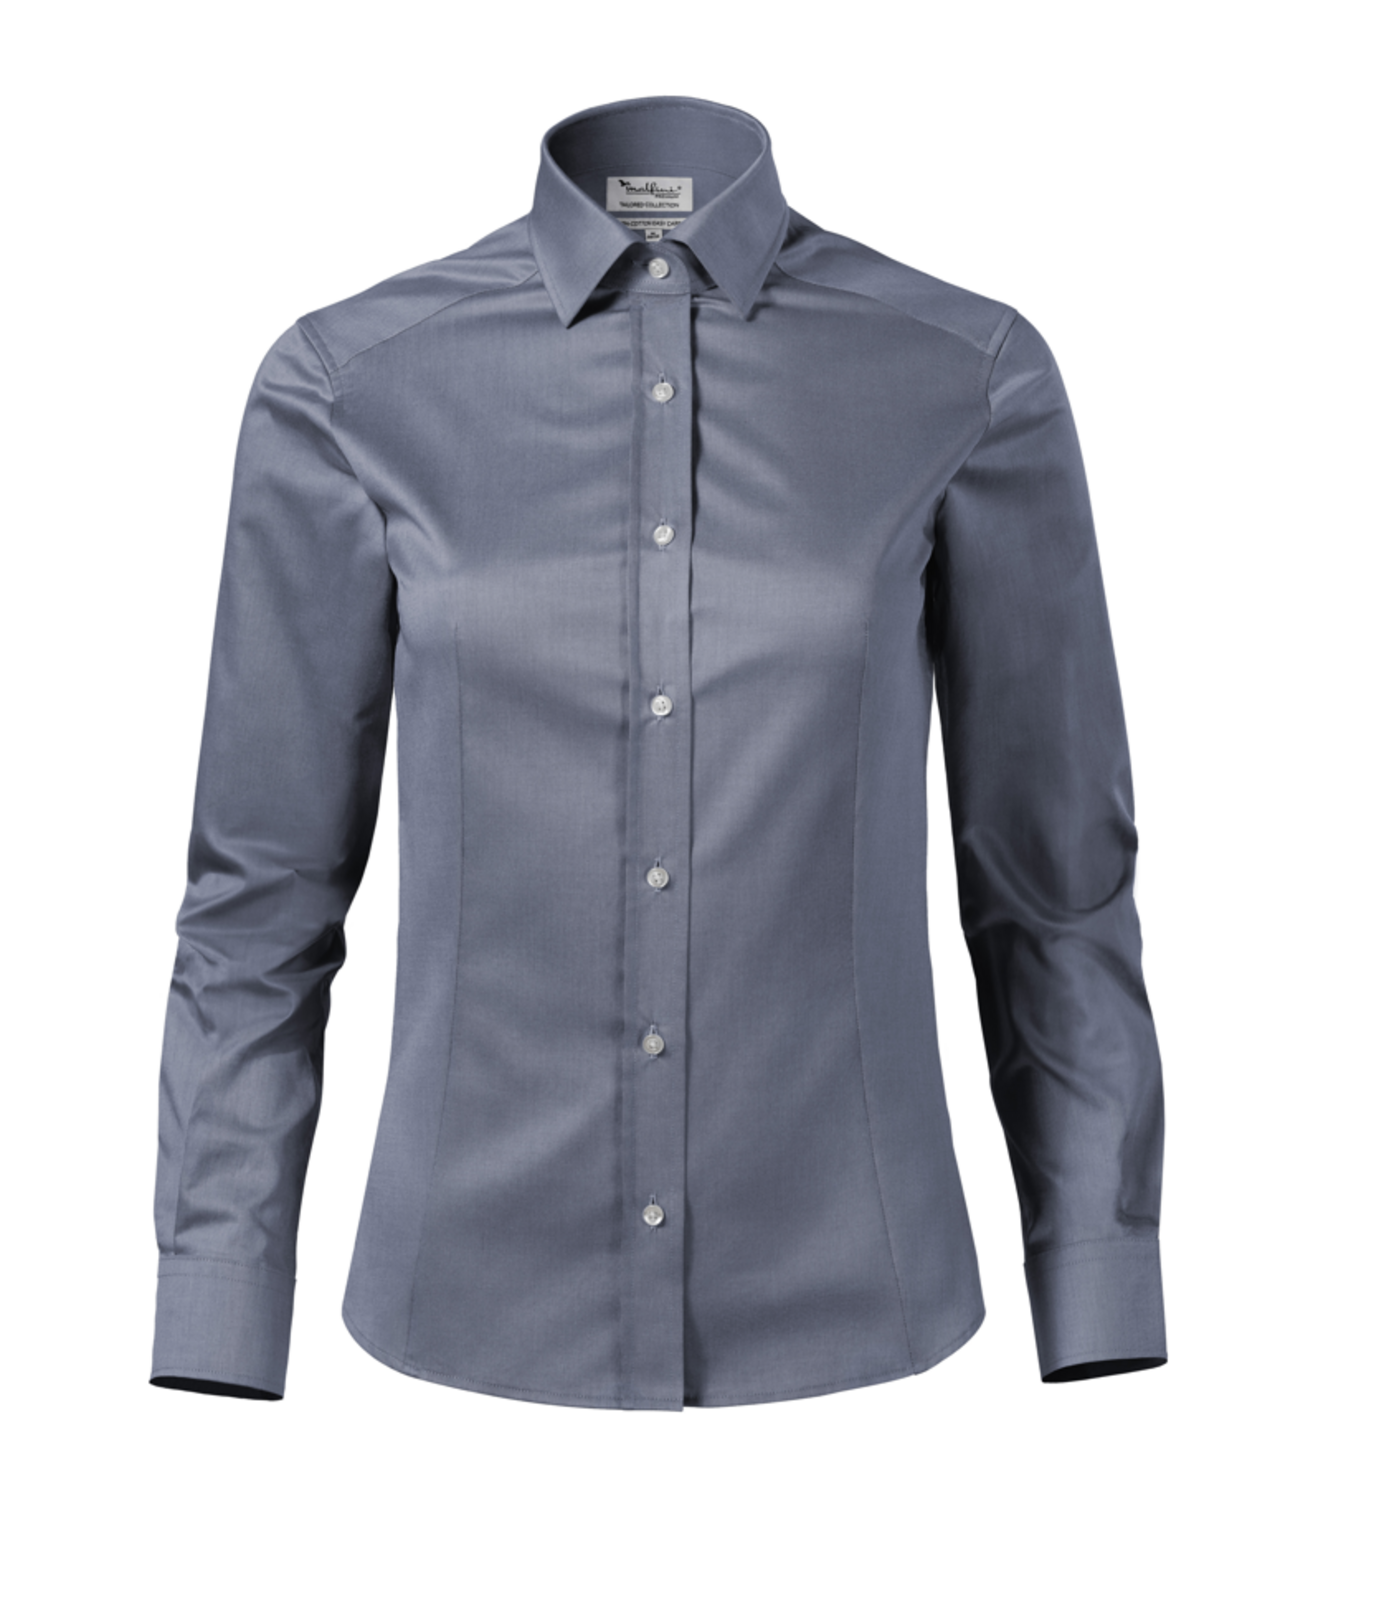 Dámska košeľa s dlhým rukávom Malfini Premium Journey 265 - veľkosť: XL, farba: búrkovo sivá melange